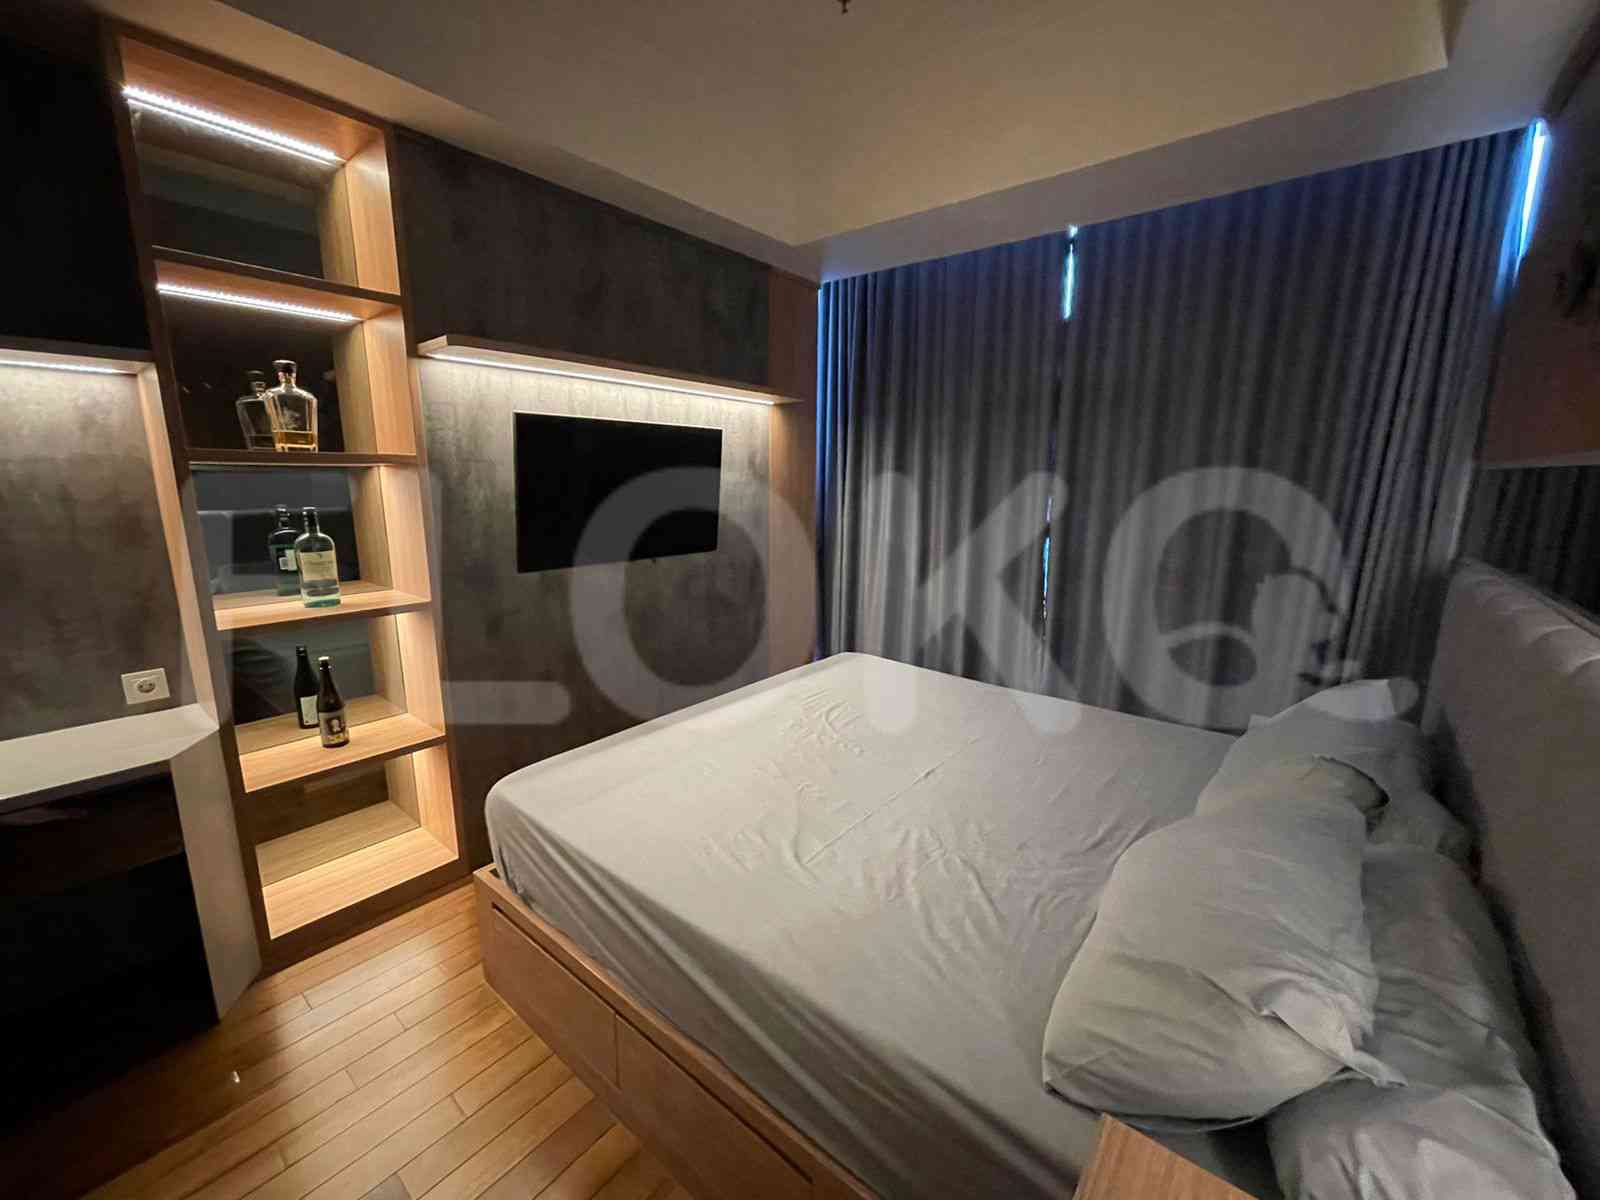 3 Bedroom on 12th Floor for Rent in Casa Grande - fte871 8